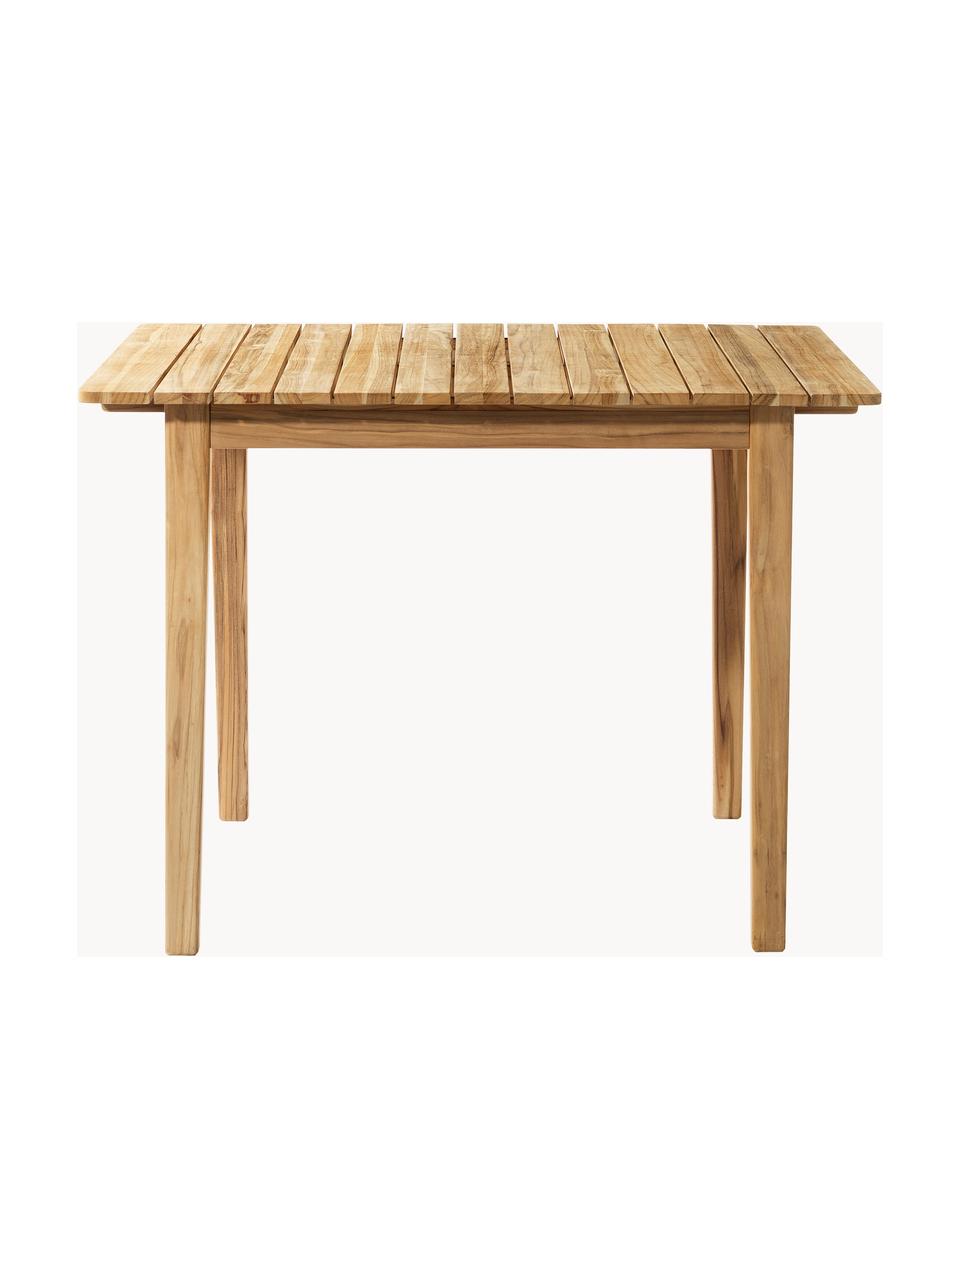 Zahradní stůl z teakového dřeva Sammen, různé velikosti, Teakové dřevo

Tento produkt je vyroben z udržitelných zdrojů dřeva s certifikací FSC®., Teakové dřevo, Š 105 cm, H 90 cm